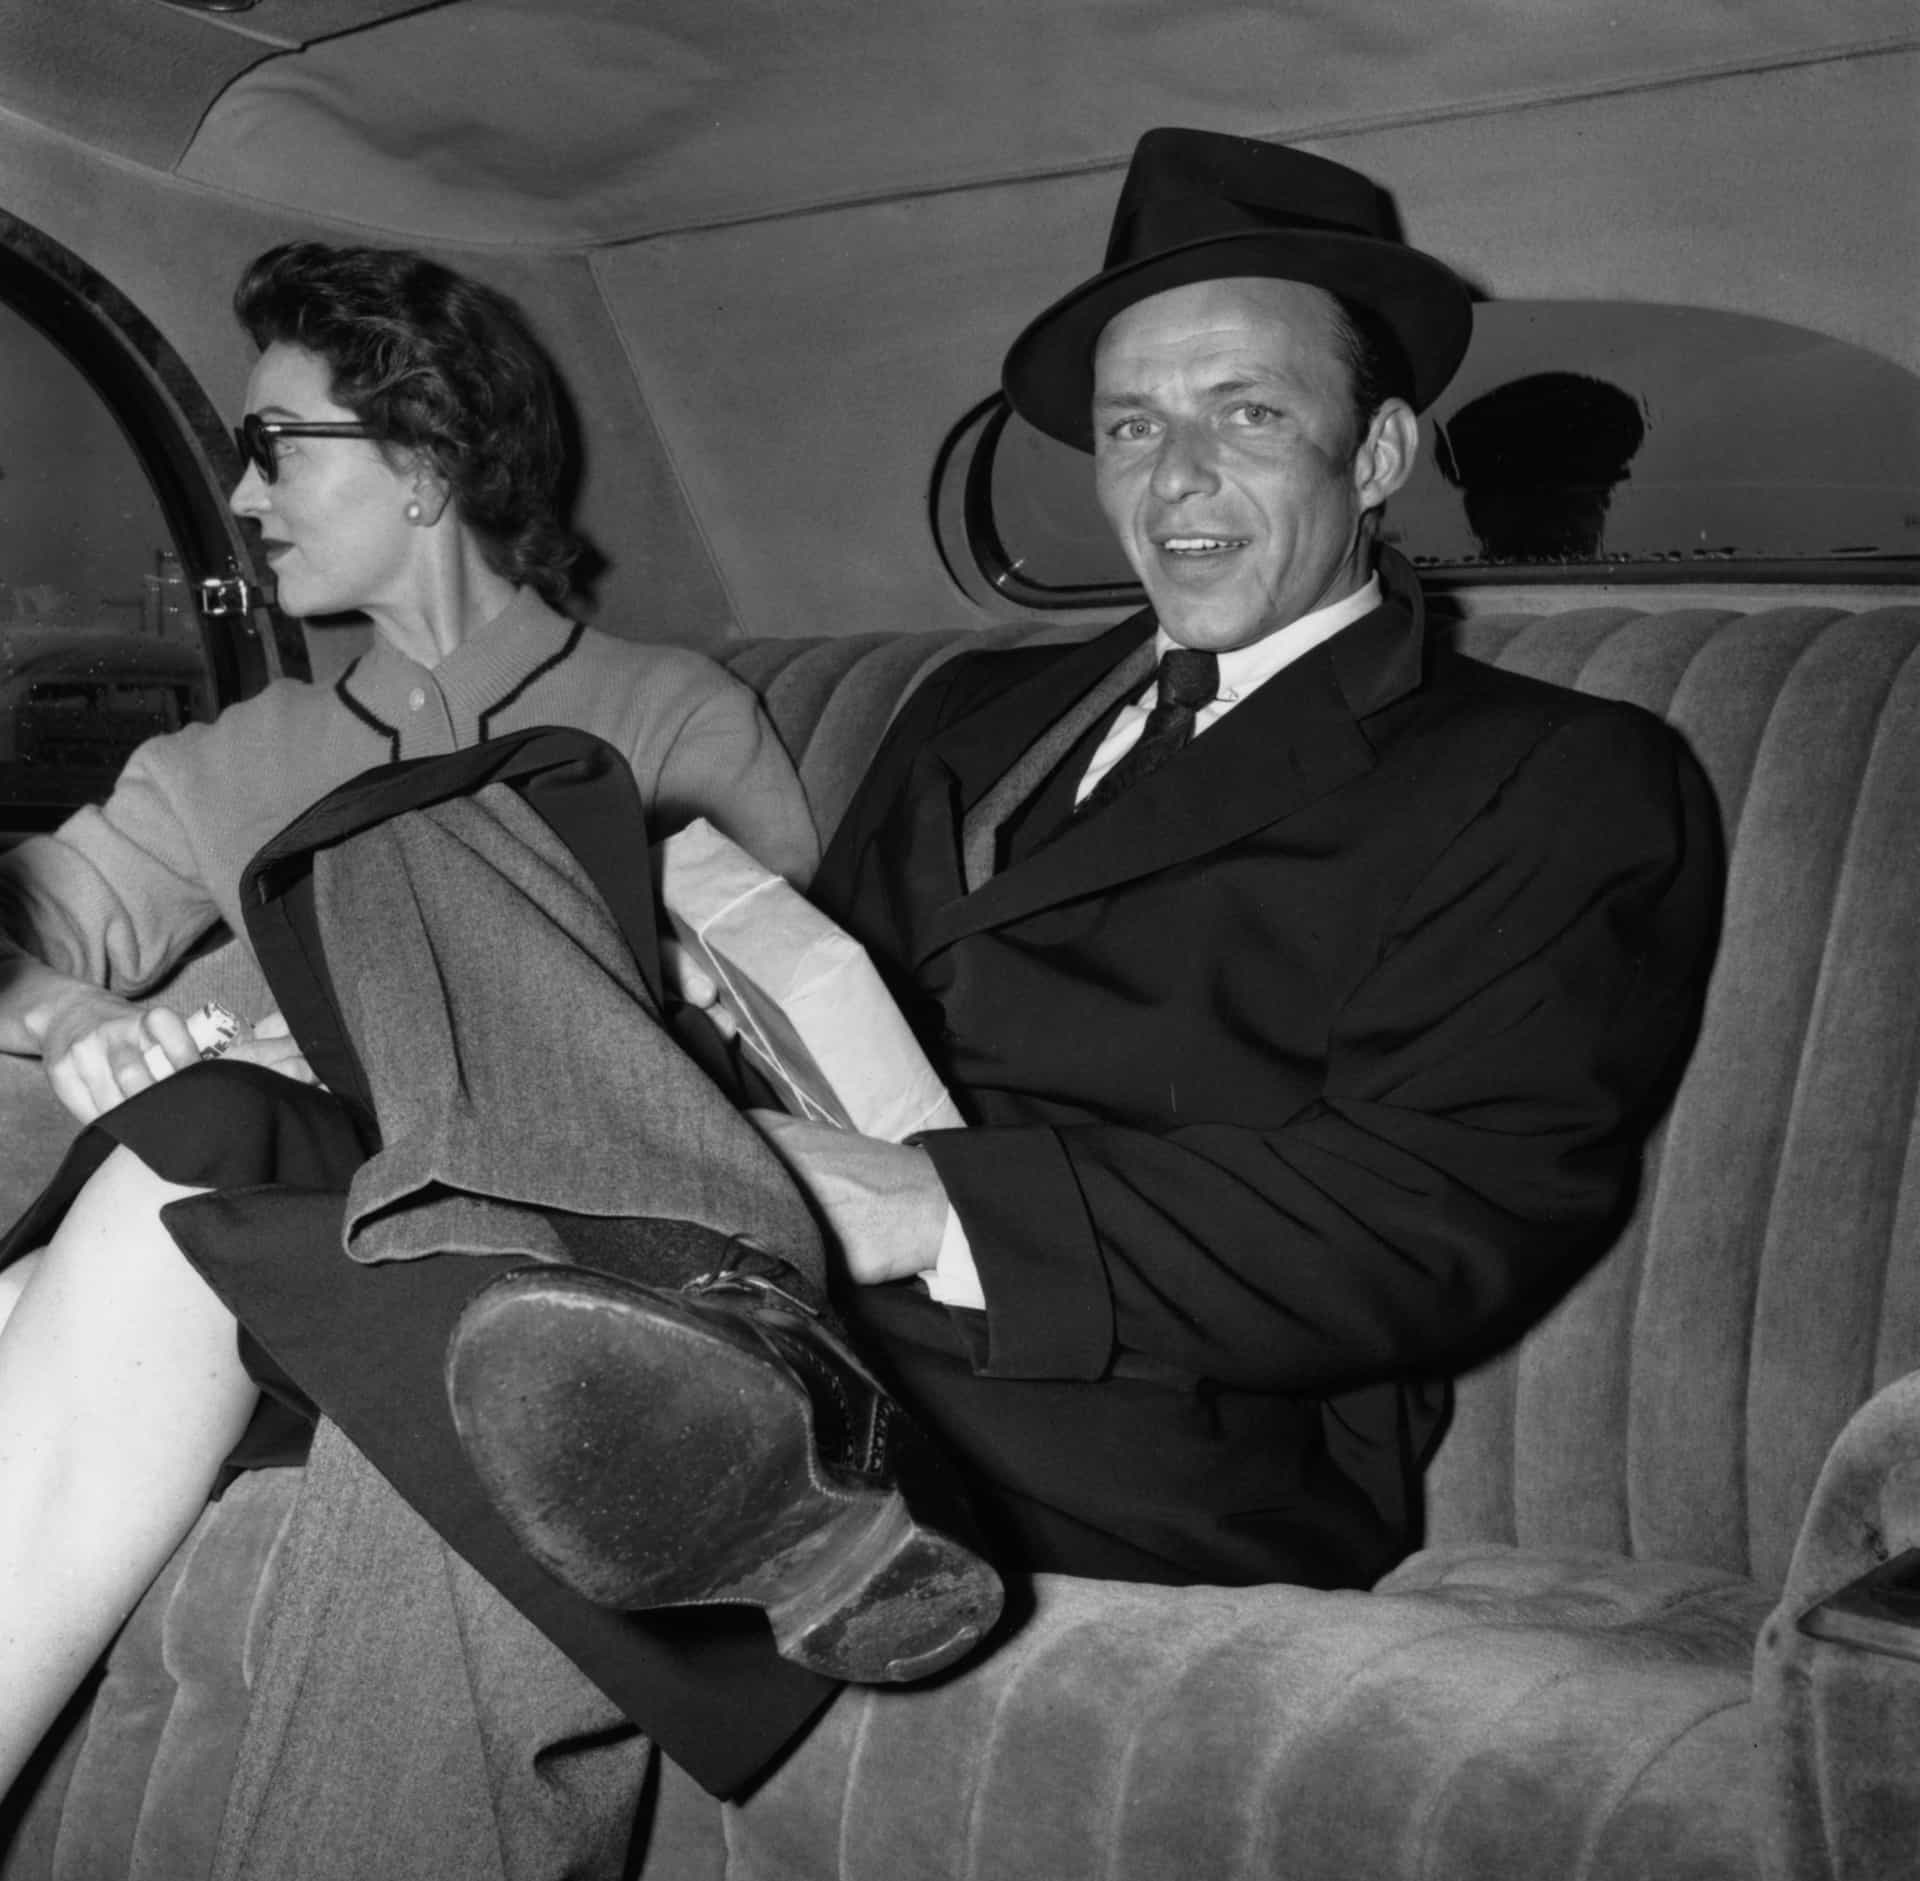 Gardner und Sinatra werden zusammen bei der Ankunft am Londoner Flughafen abgelichtet.